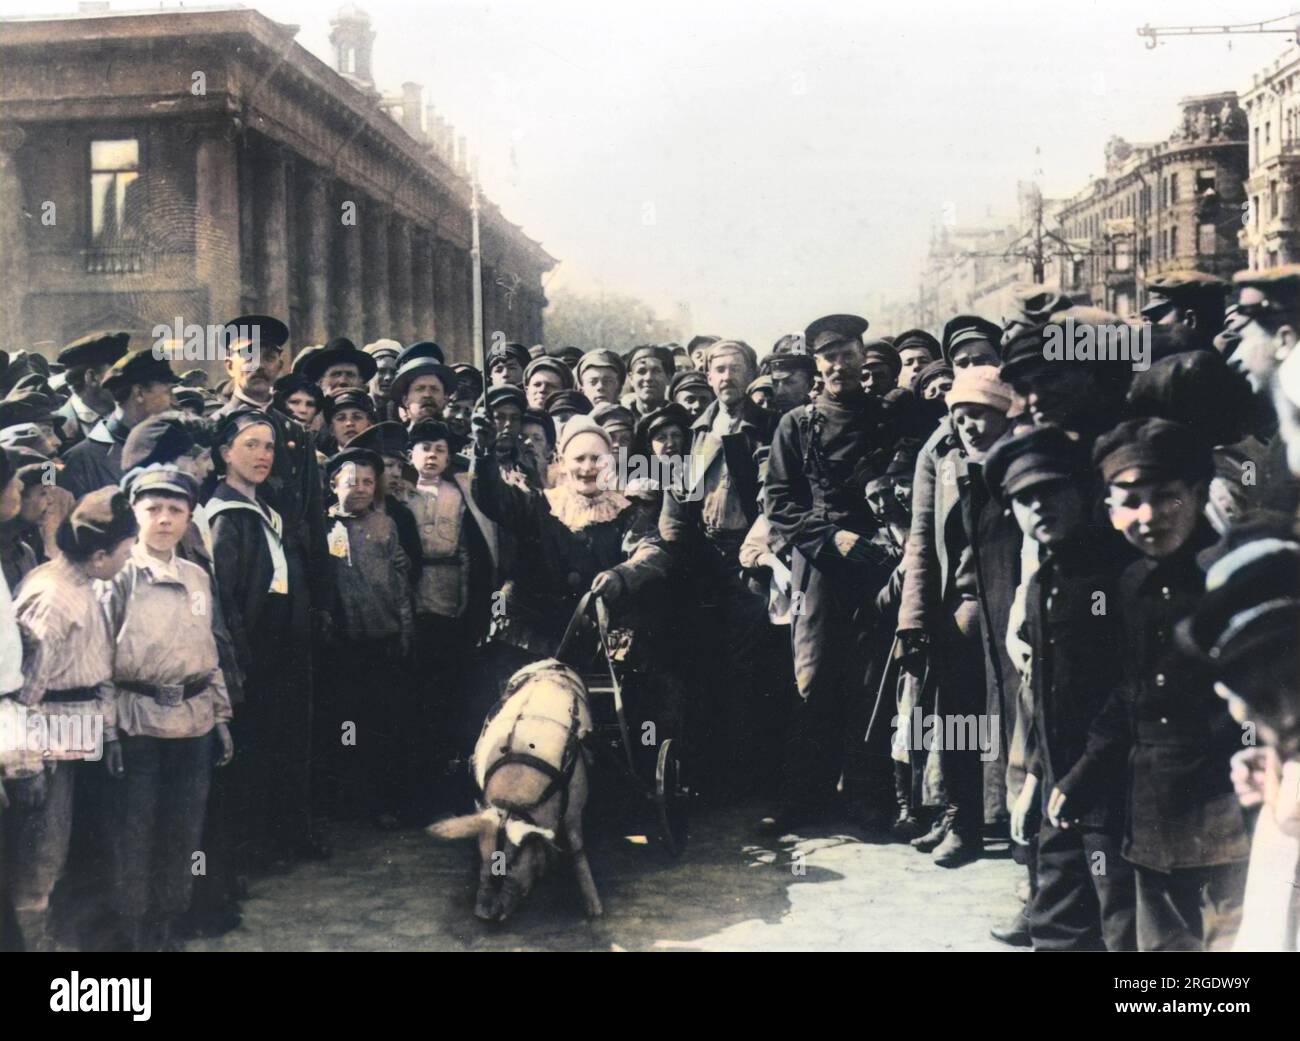 Come parte delle celebrazioni del 1921 maggio a St Petersburg, un pagliaccio dall'aspetto pazzo, cavalcare i maiali, intrattiene le folle piacevolmente sconcertate. Foto Stock